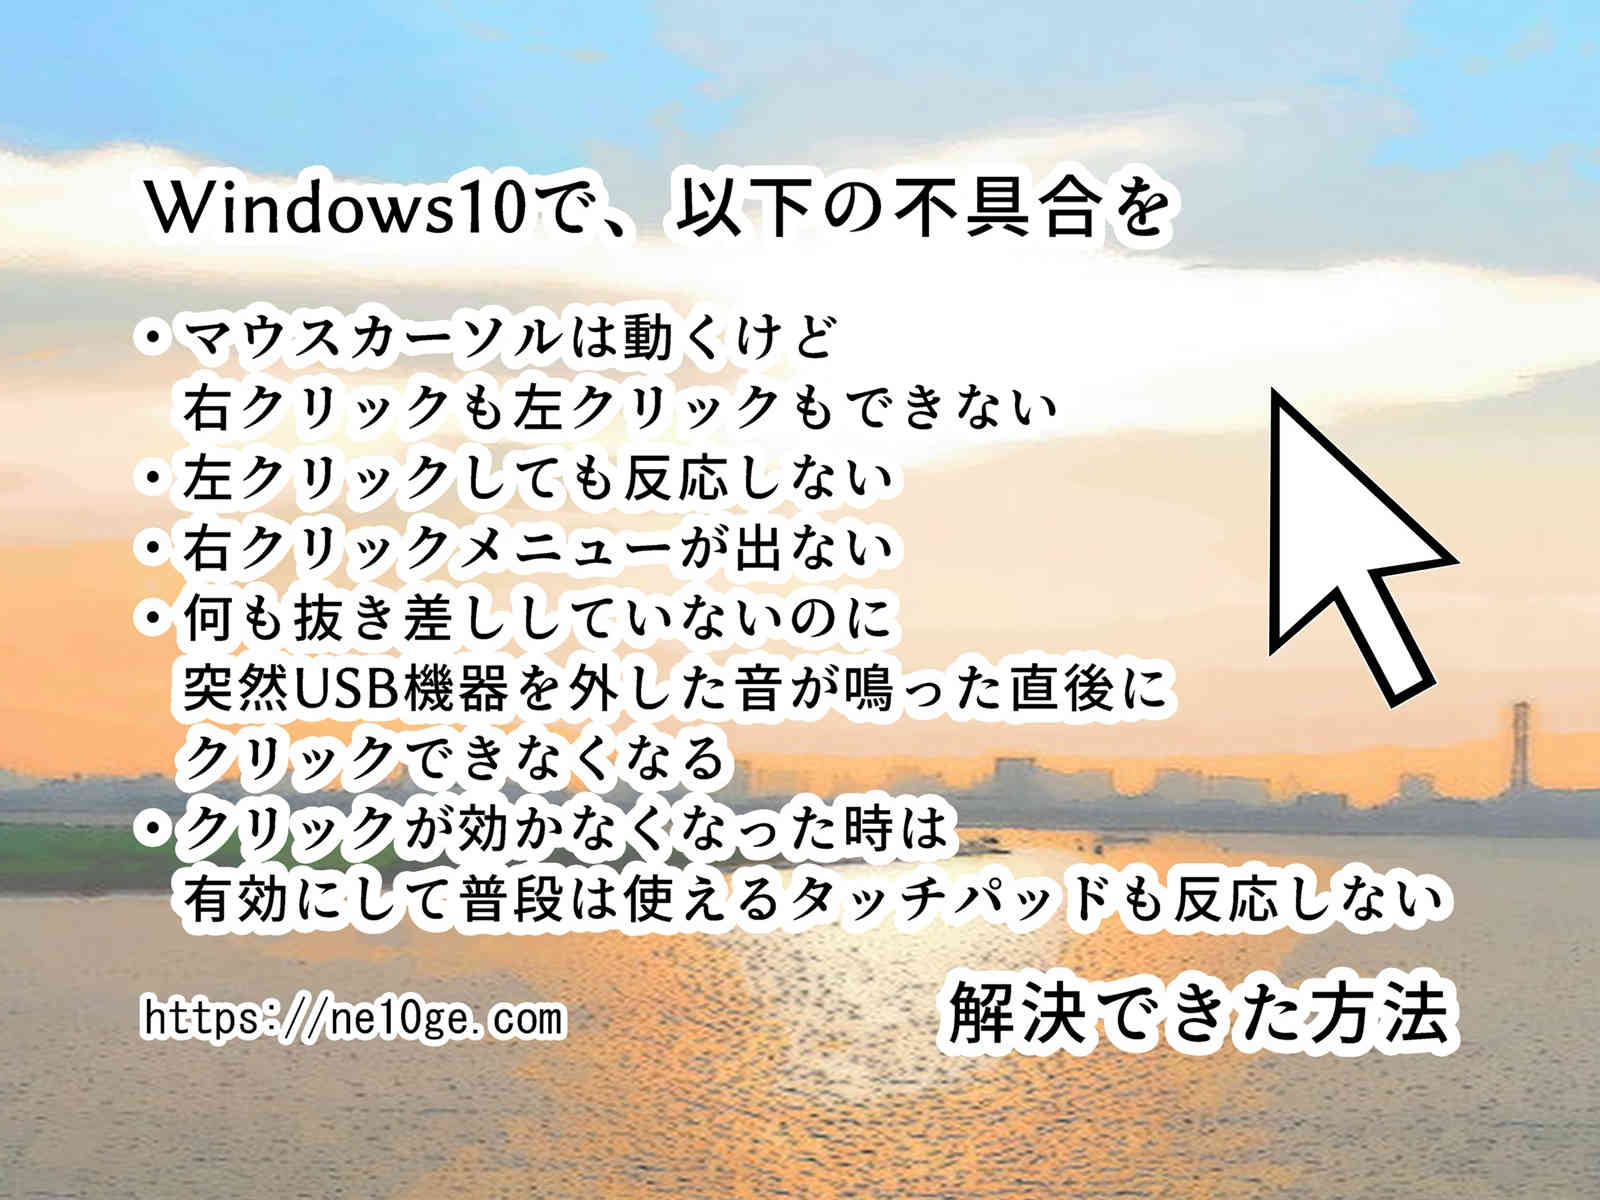 Windows10で起きる不具合、マウスカーソルは動くけどクリックできない、右クリックも左クリックも効かない時の根本的な解決方法を紹介しています。